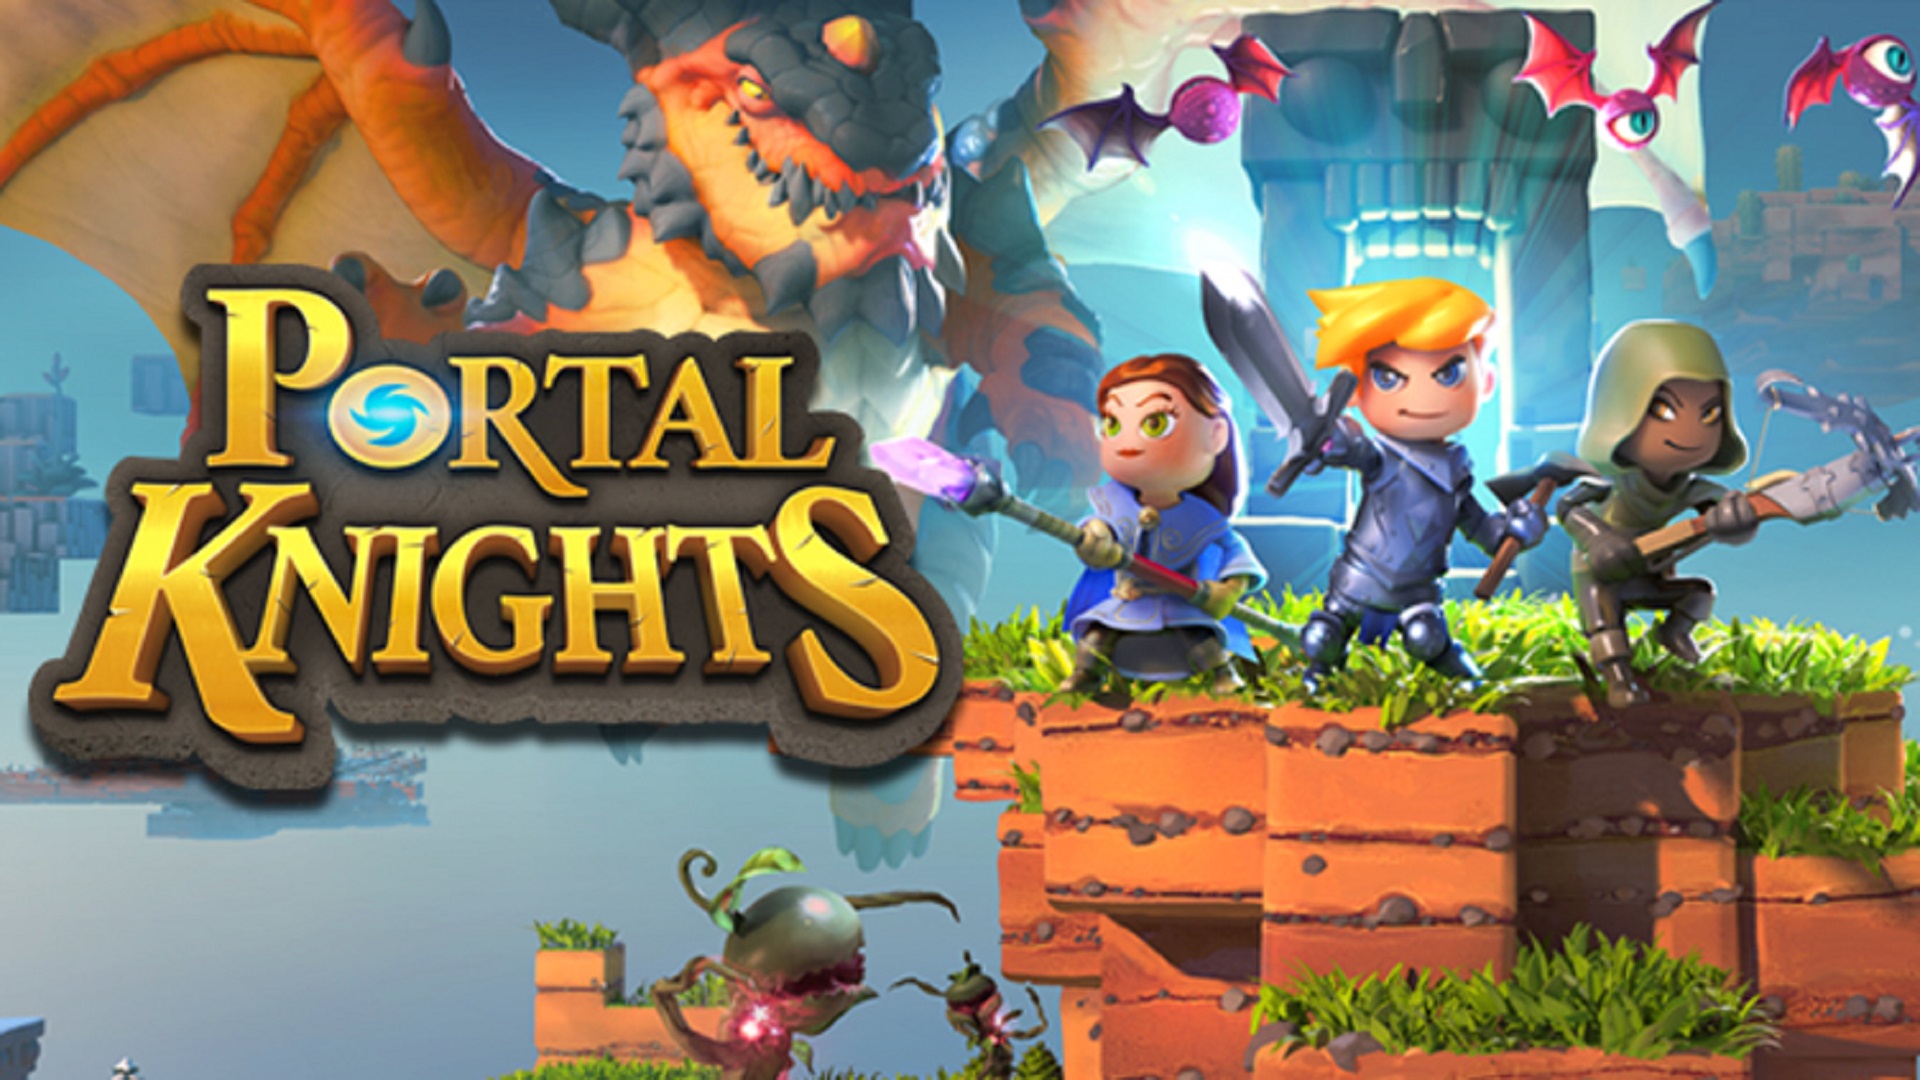 Portal knights